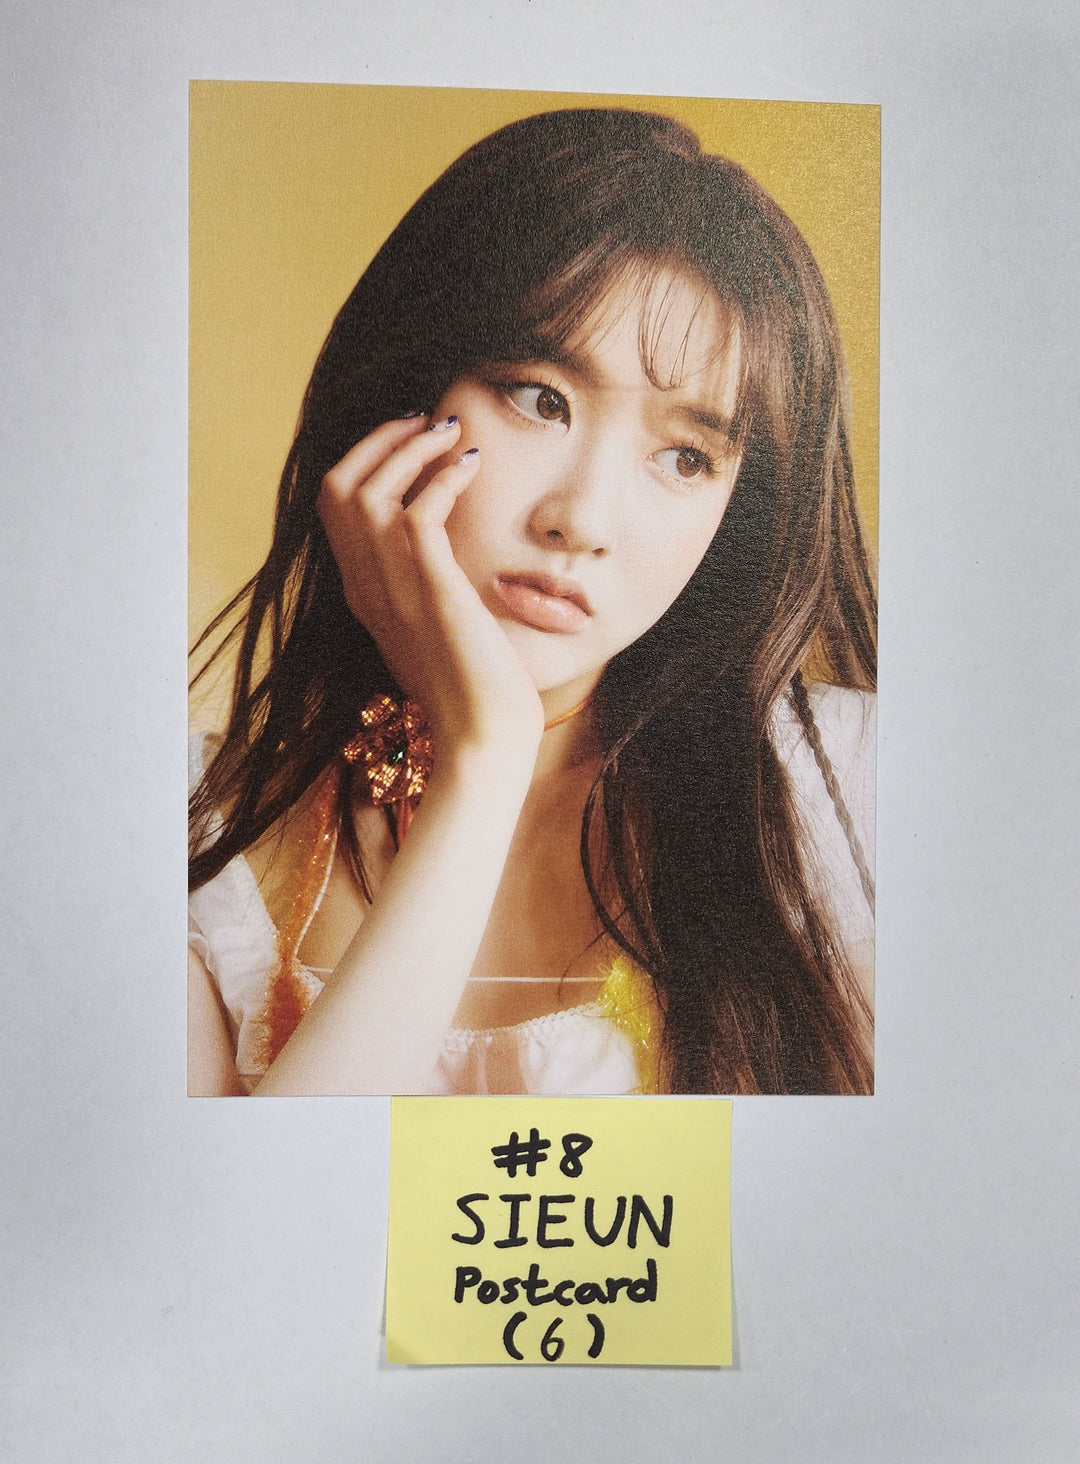 스테이씨 'WE NEED LOVE' - 에버라인 팬사인회 이벤트 포토카드, 엽서 2차